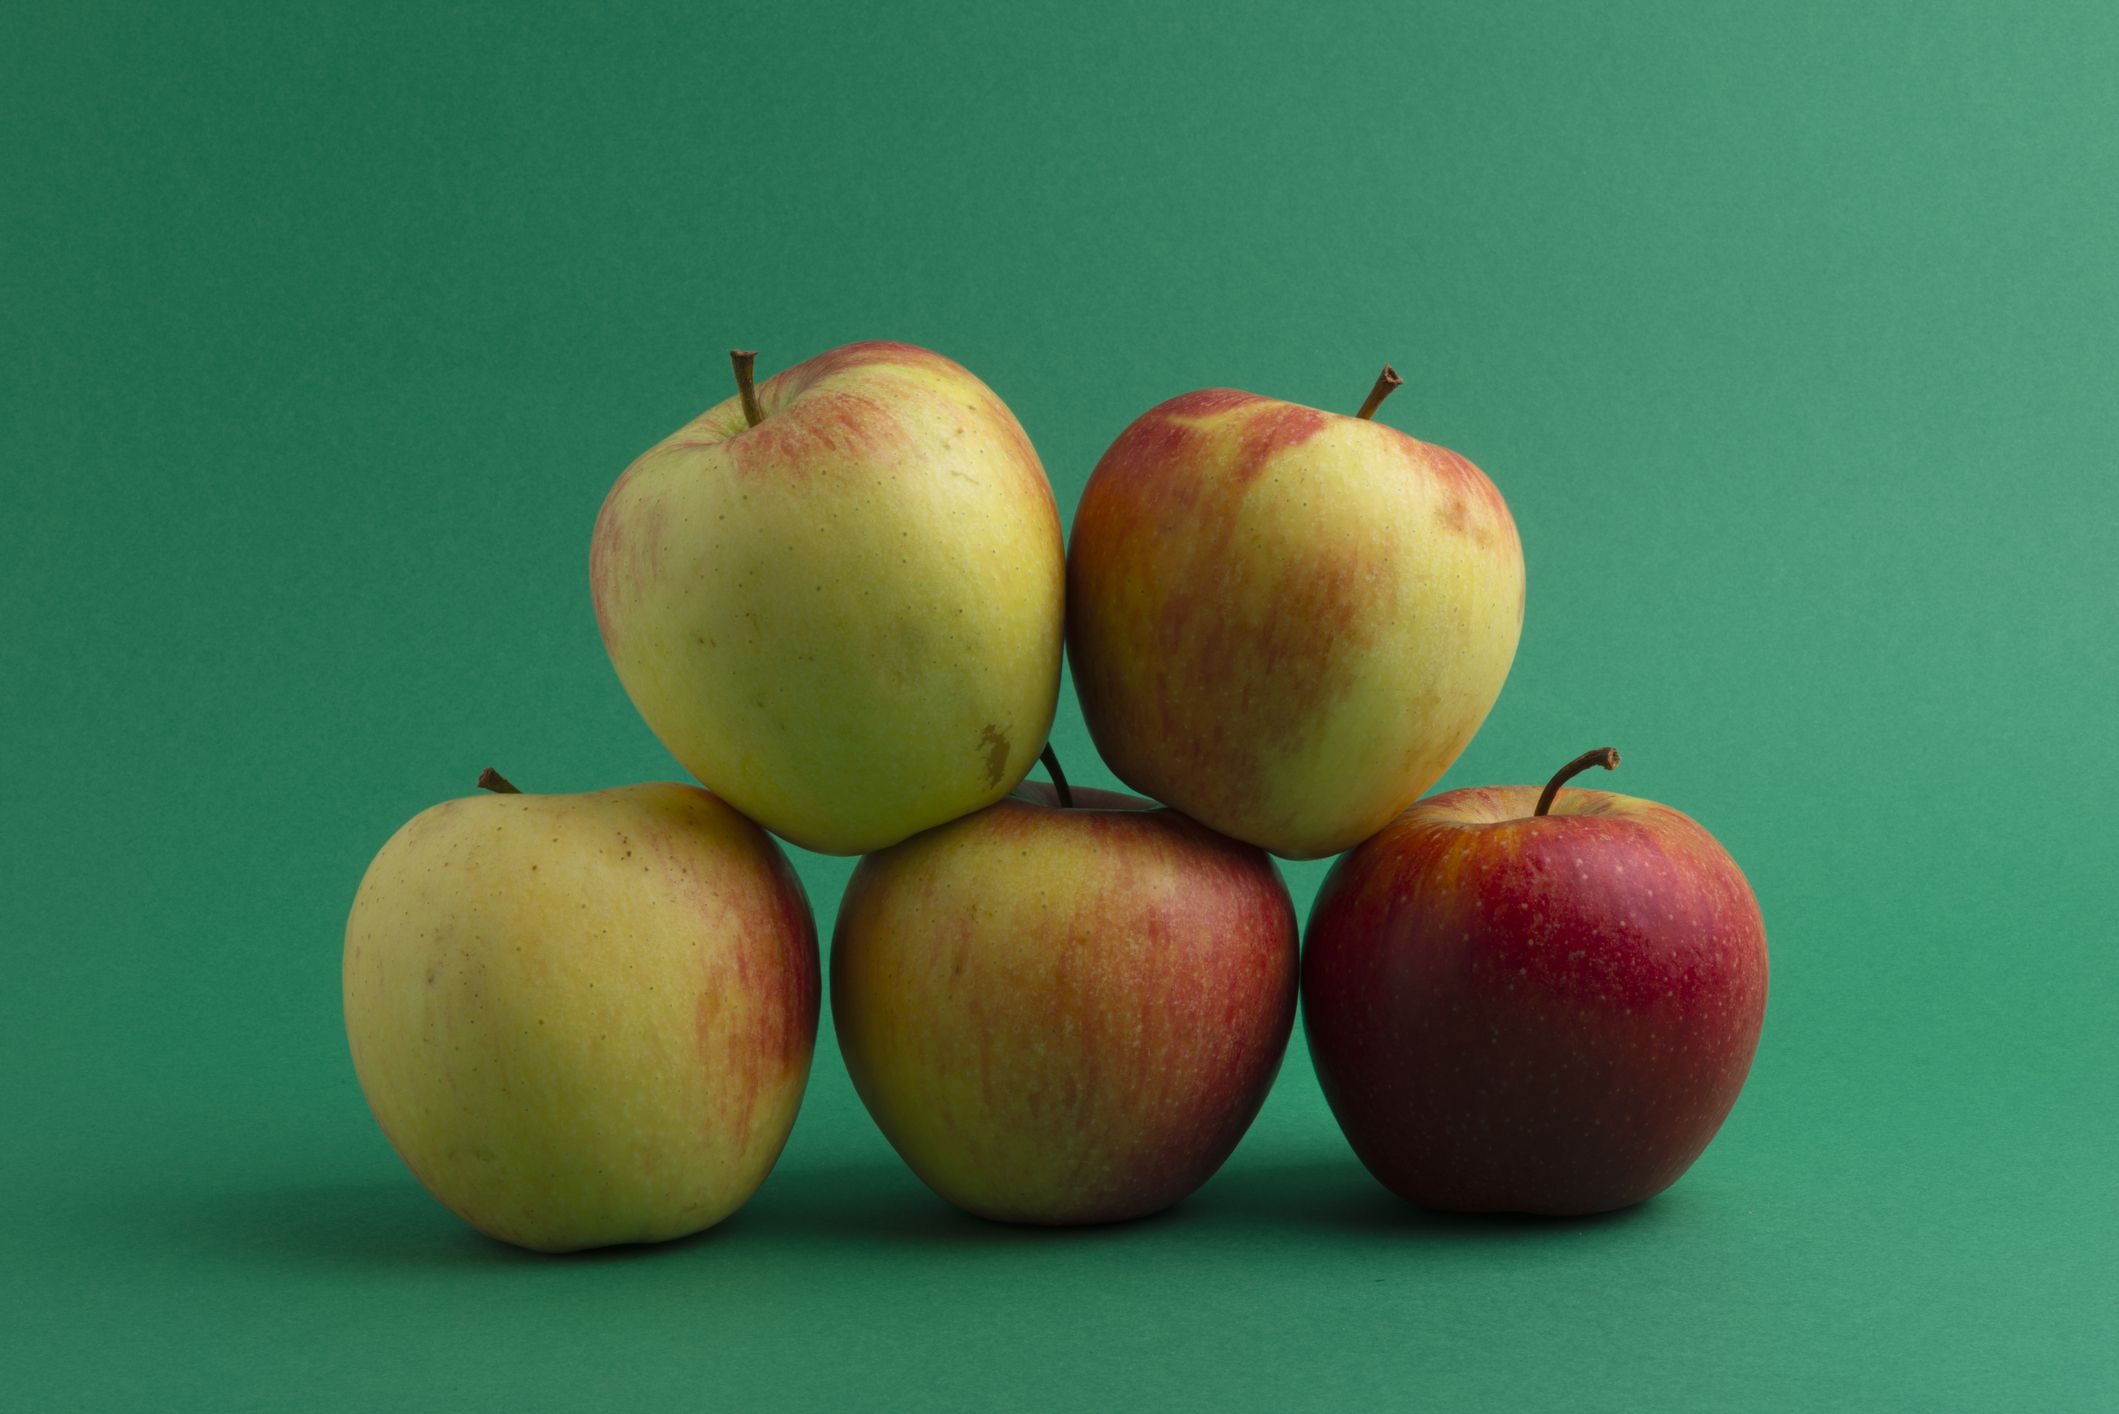 https://hips.hearstapps.com/hmg-prod/images/types-of-apples-jonagold-1658526213.jpeg